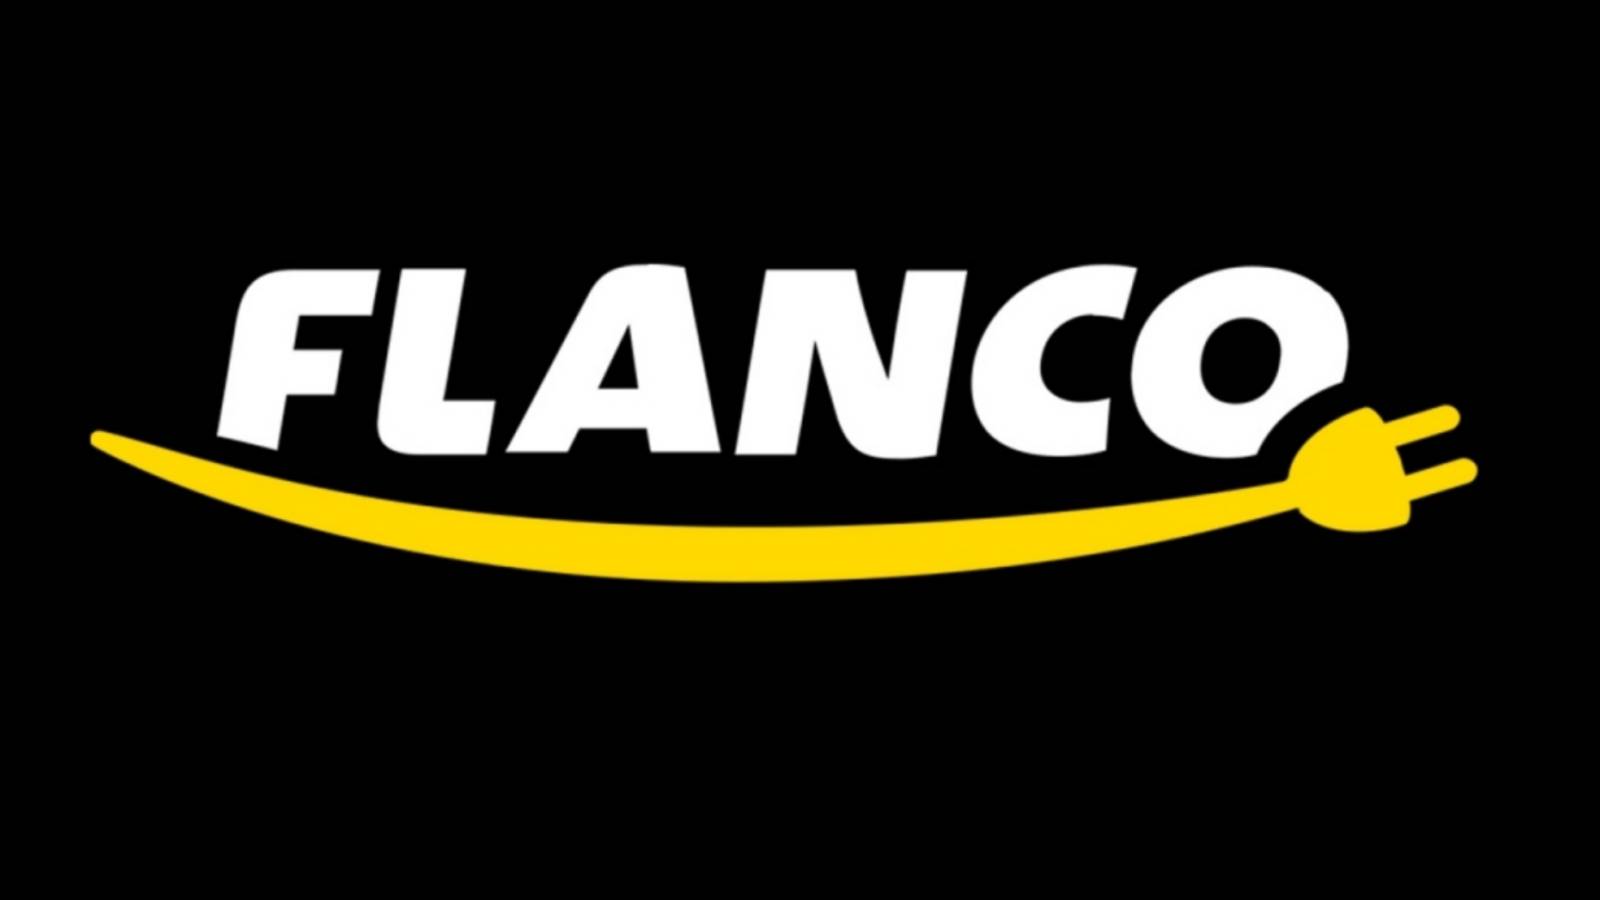 Flanco Electrocasnice Pret BLACK FRIDAY 2020